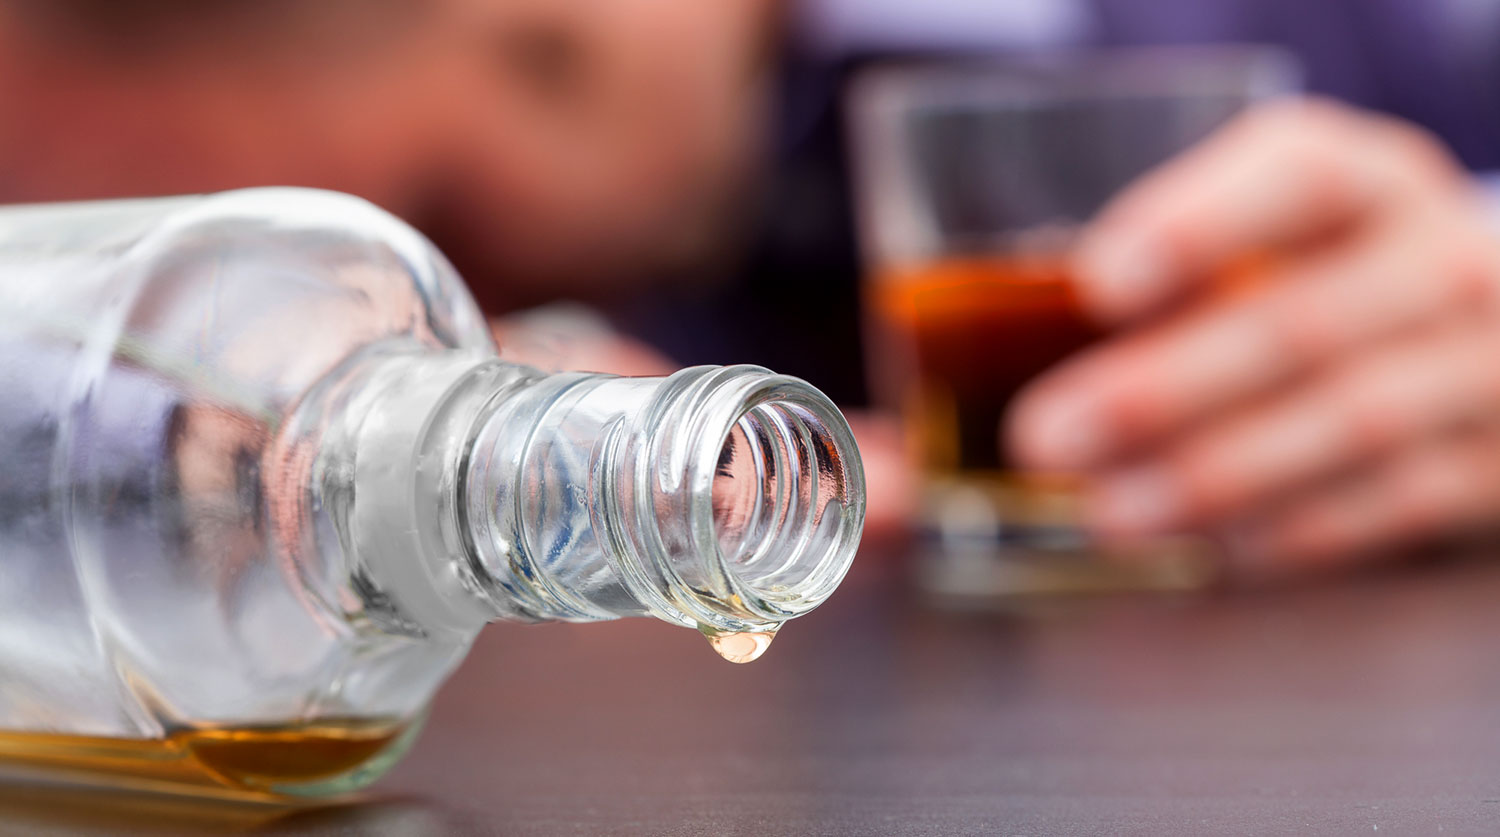 Люди стали чаще и больше употреблять алкоголь
